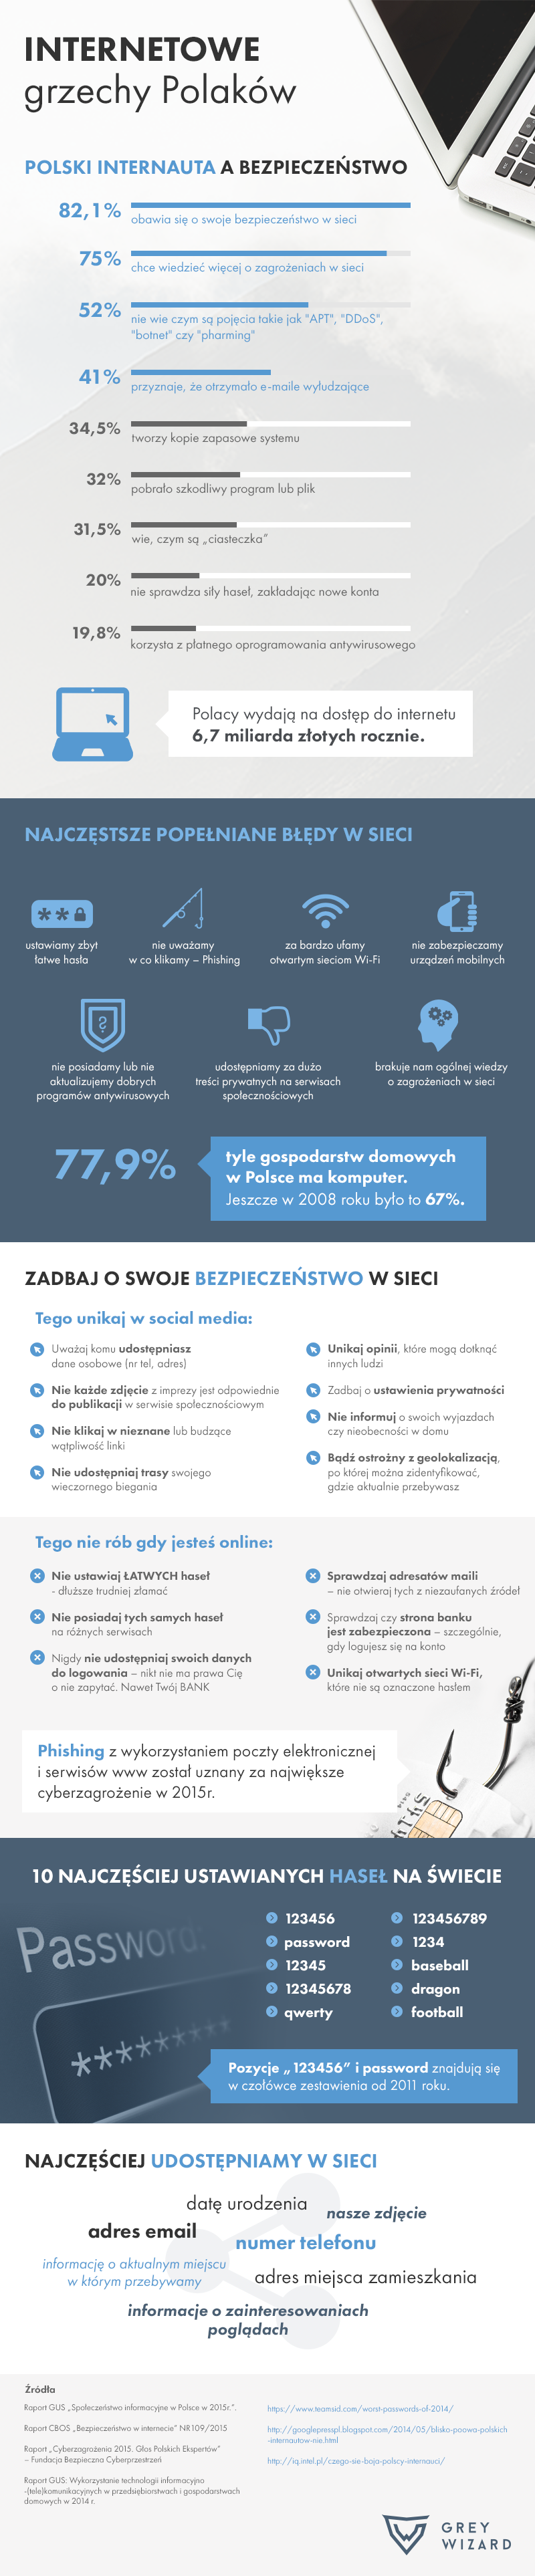 infografika_internetowe_grzechy_polakow